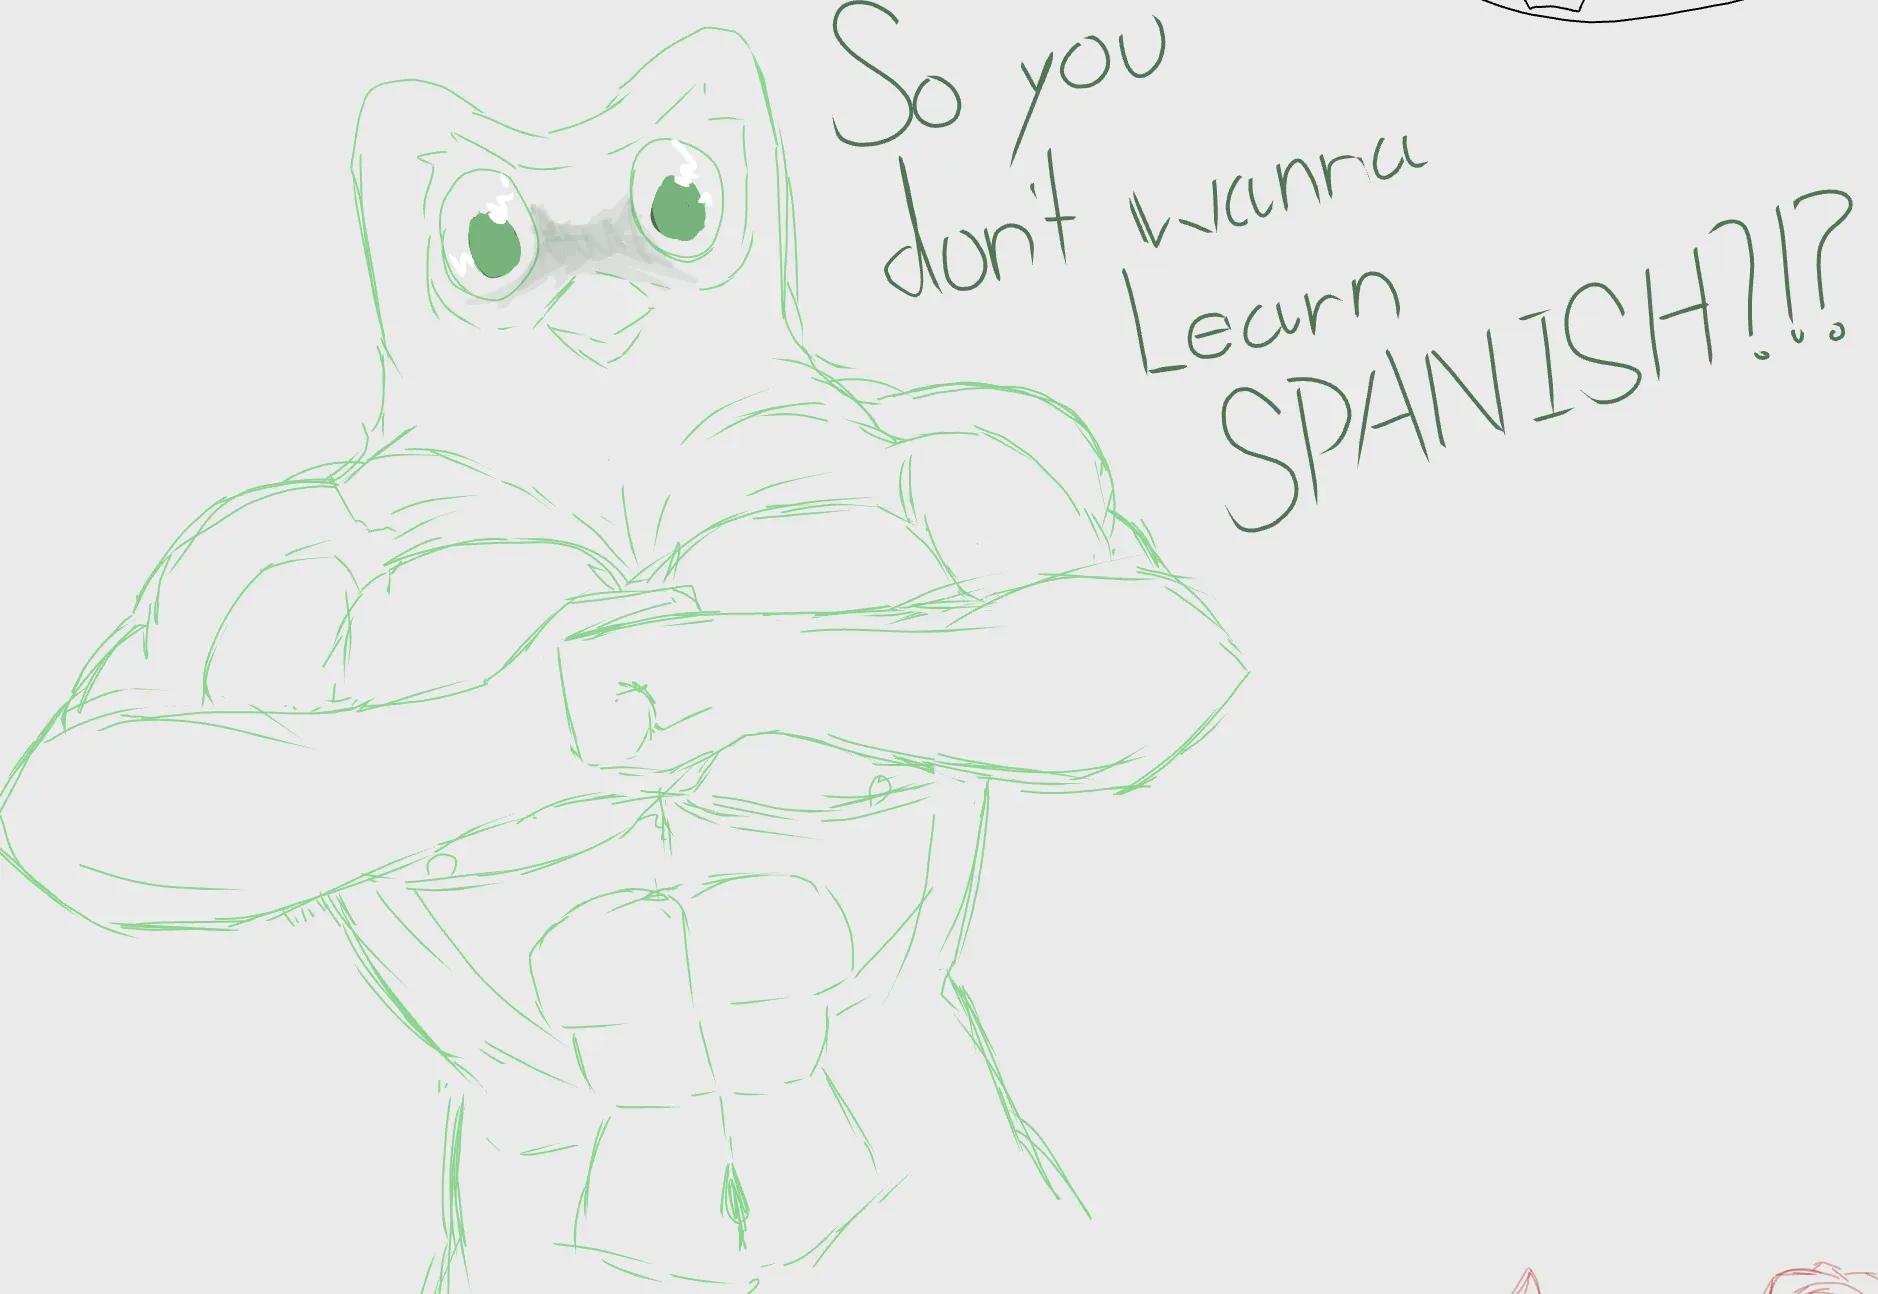 So you don't wanna learn SPANISH?!?